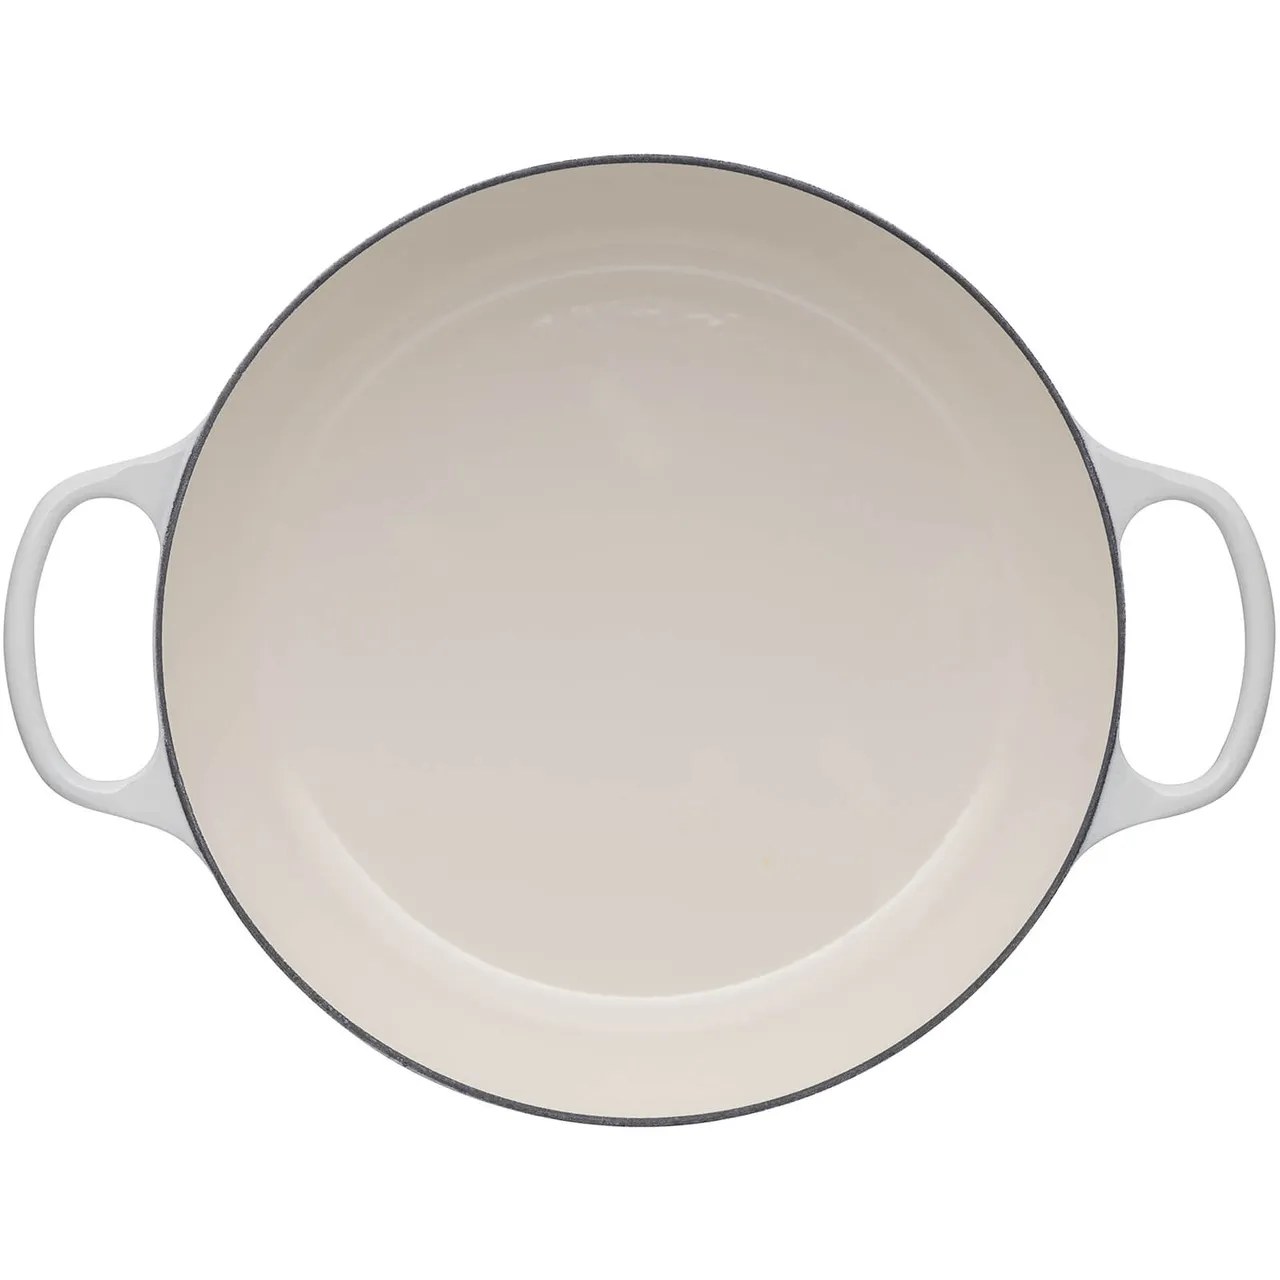 Le Creuset Signature Cast Iron Shallow Casserole Dish - 30cm - Meringue